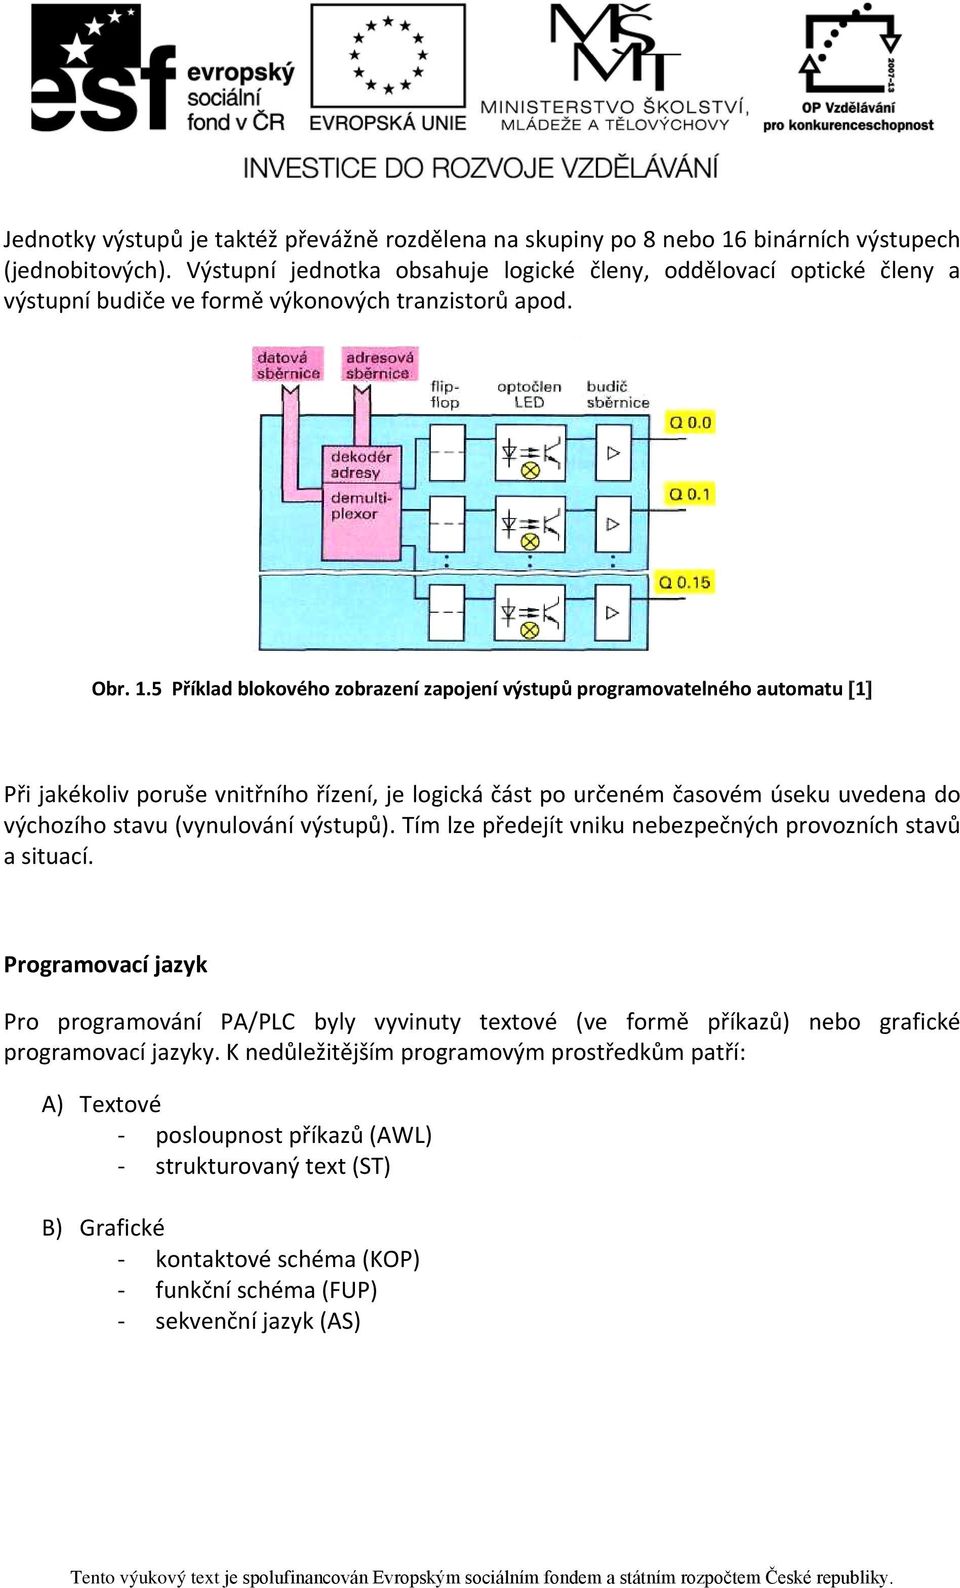 5 Příklad blokového zobrazení zapojení výstupů programovatelného automatu [1] Při jakékoliv poruše vnitřního řízení, je logická část po určeném časovém úseku uvedena do výchozího stavu (vynulování